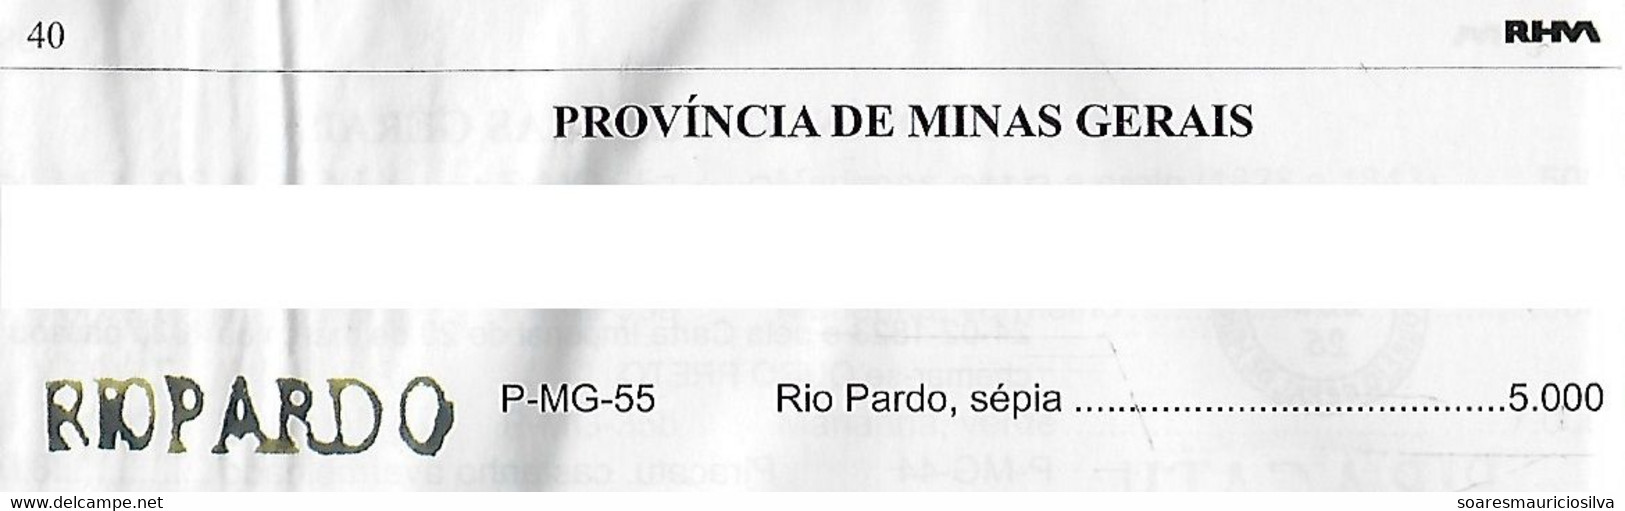 Brazil 1838 Fold Cover SP Public Service From Rio Pardo River To Ouro Preto Pre-philatelic Cancel P-MG-55 (cat US$5,000) - Prephilately